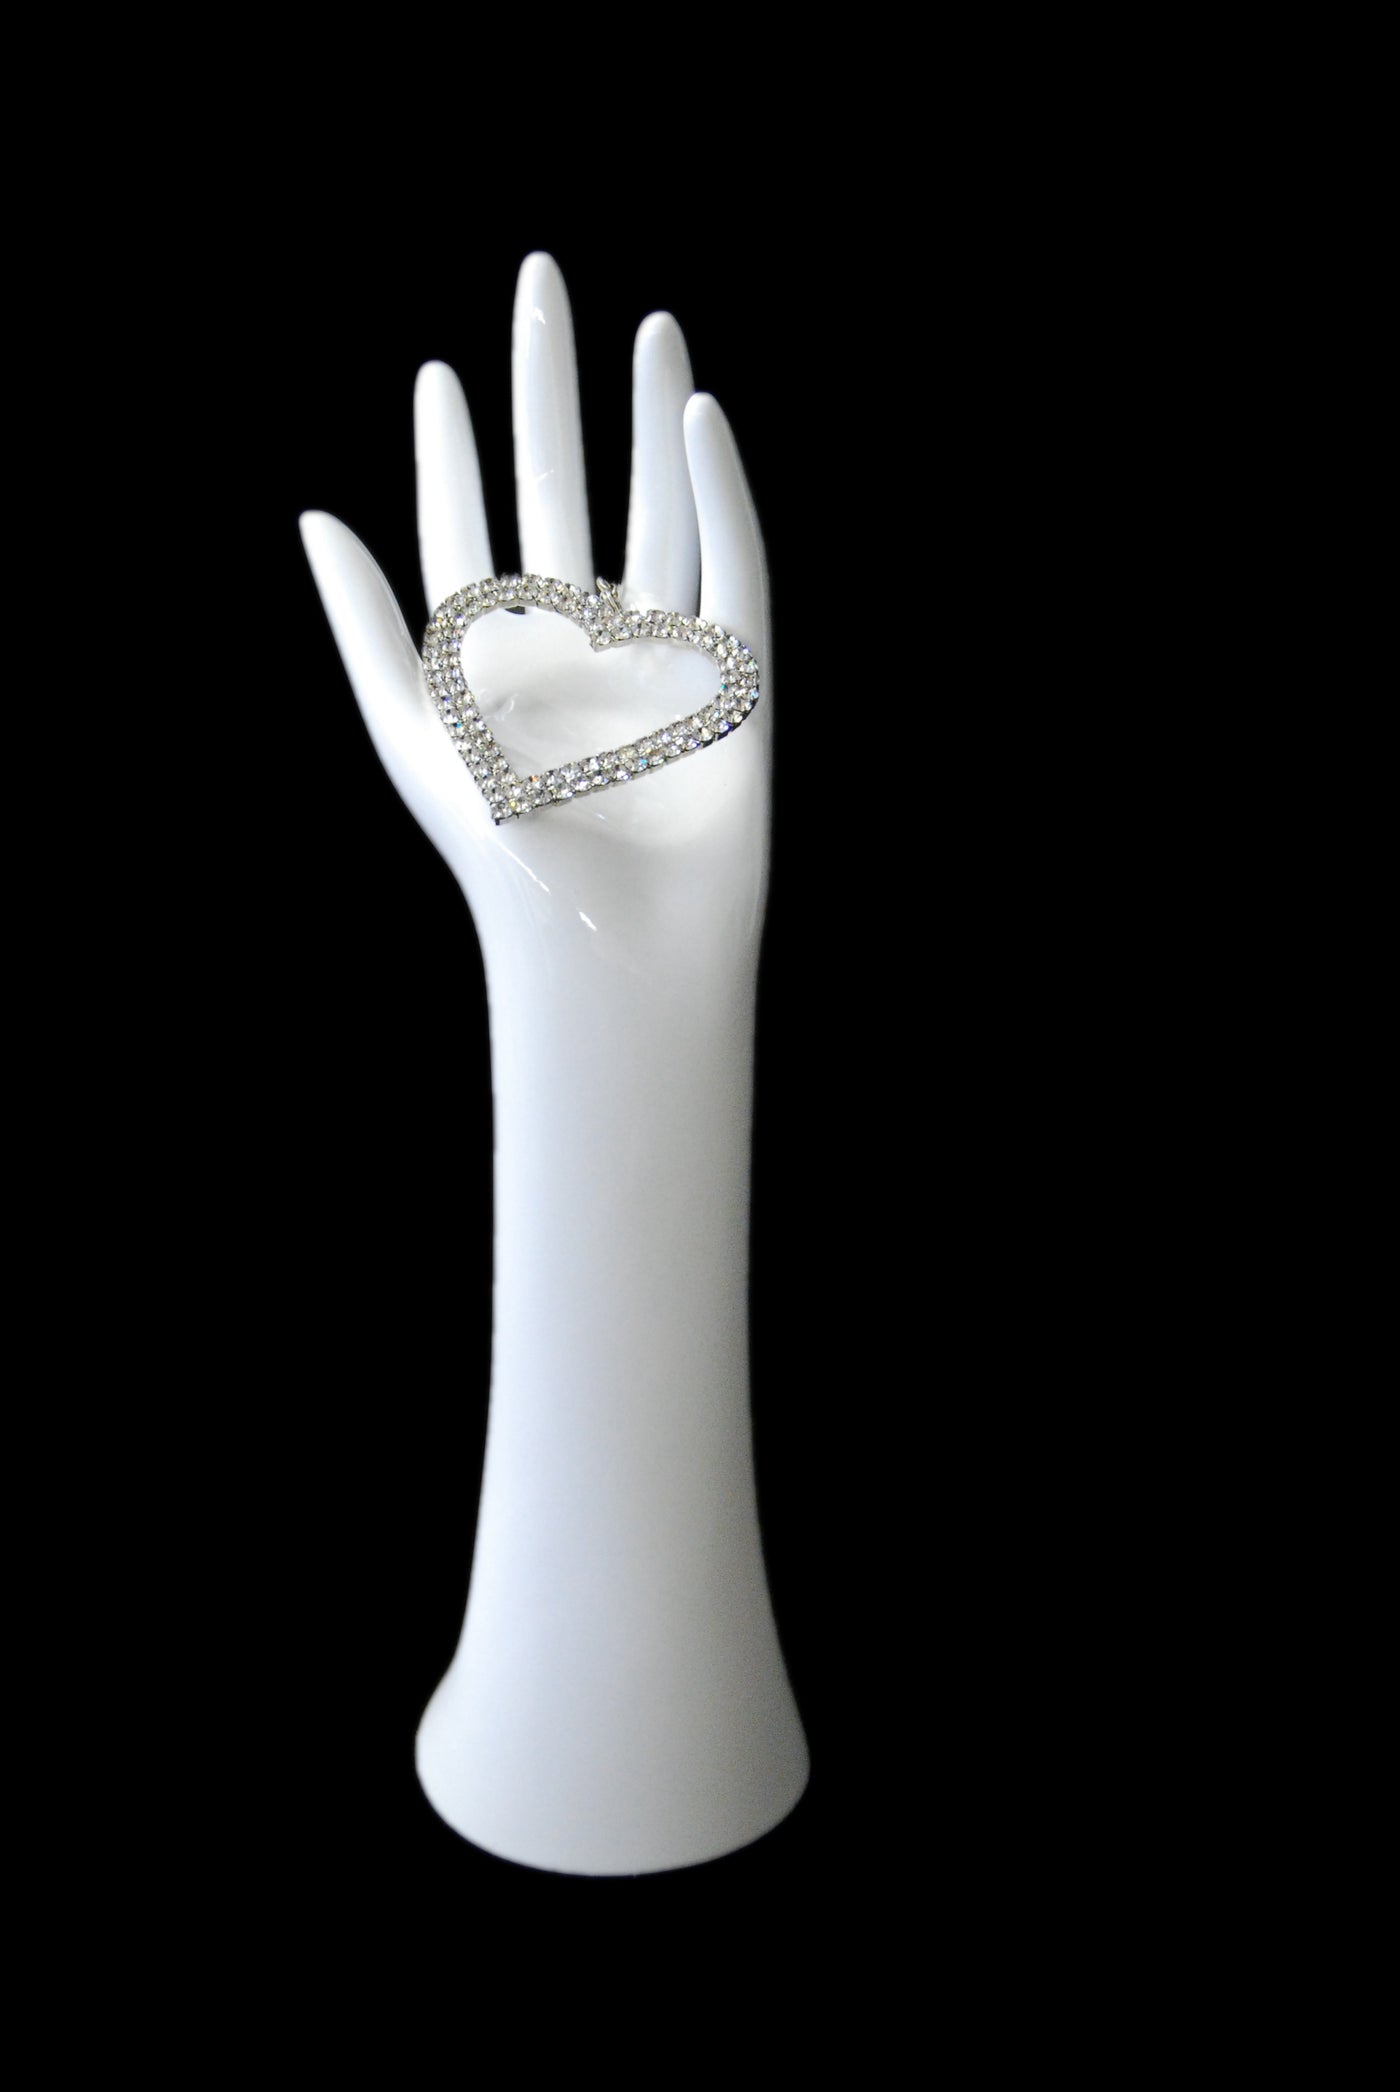 Jewelry Display Hand 1: Glossy White